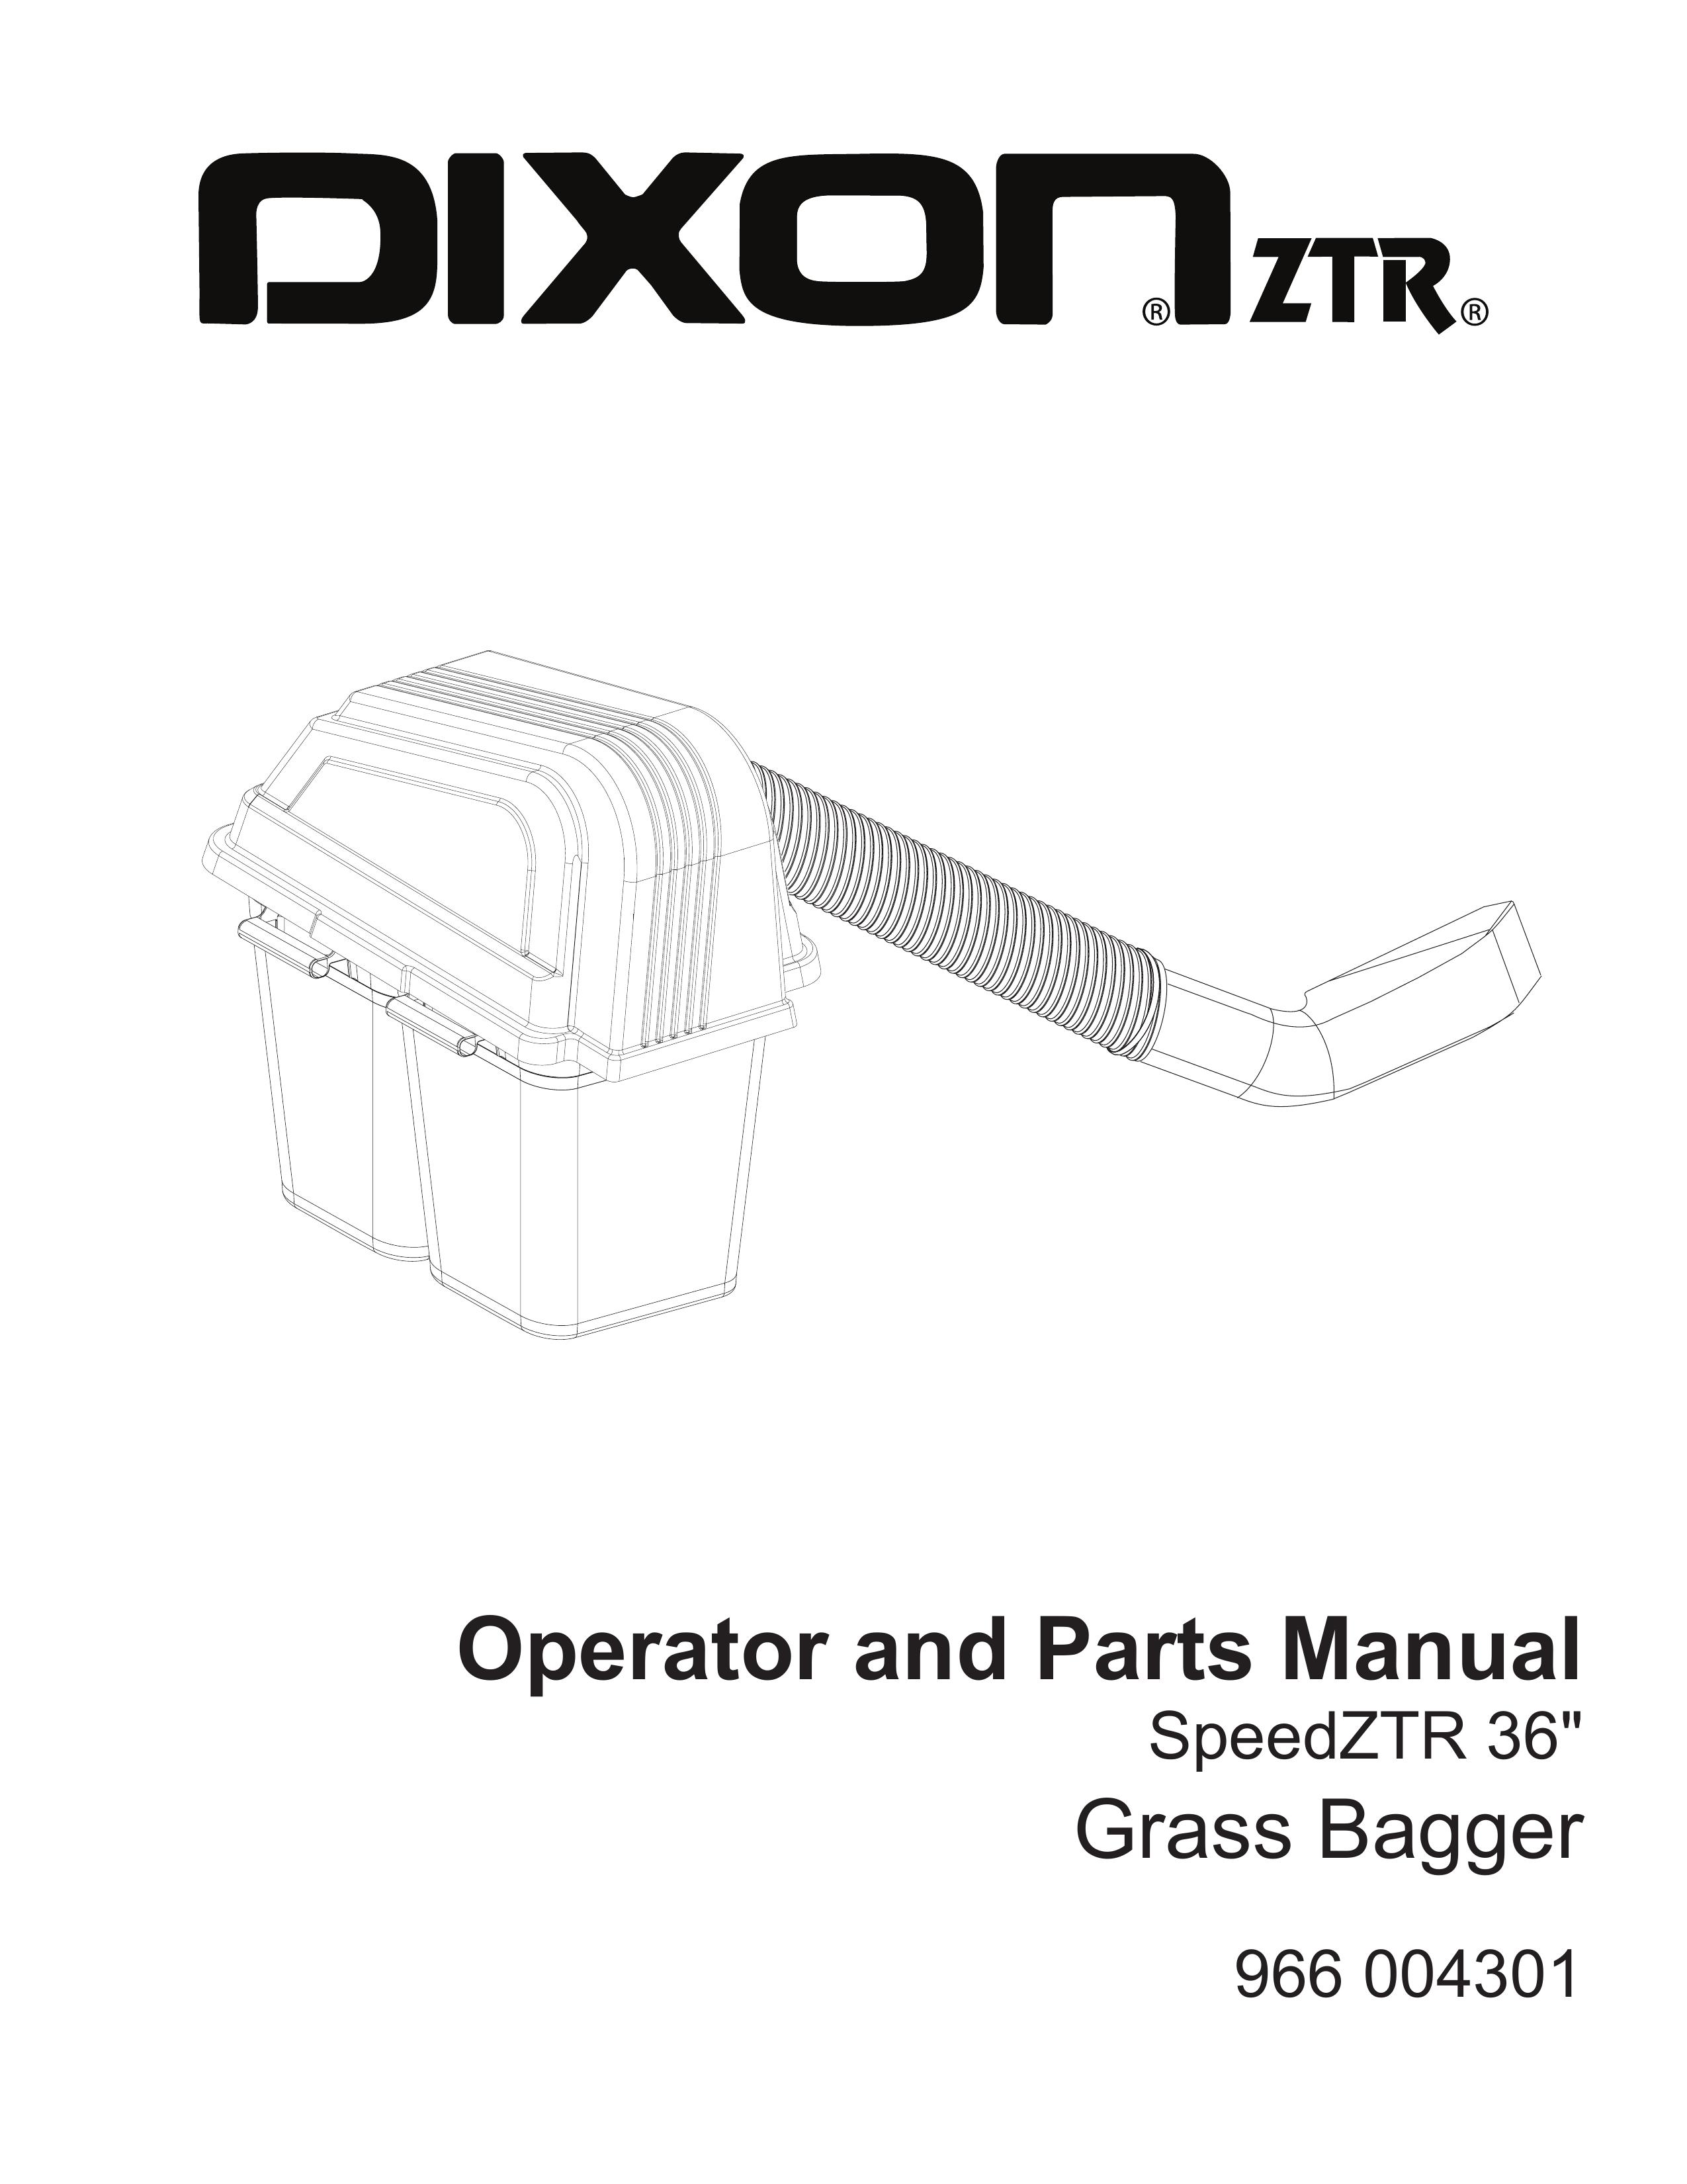 Dixon 115 150227 Lawn Mower User Manual